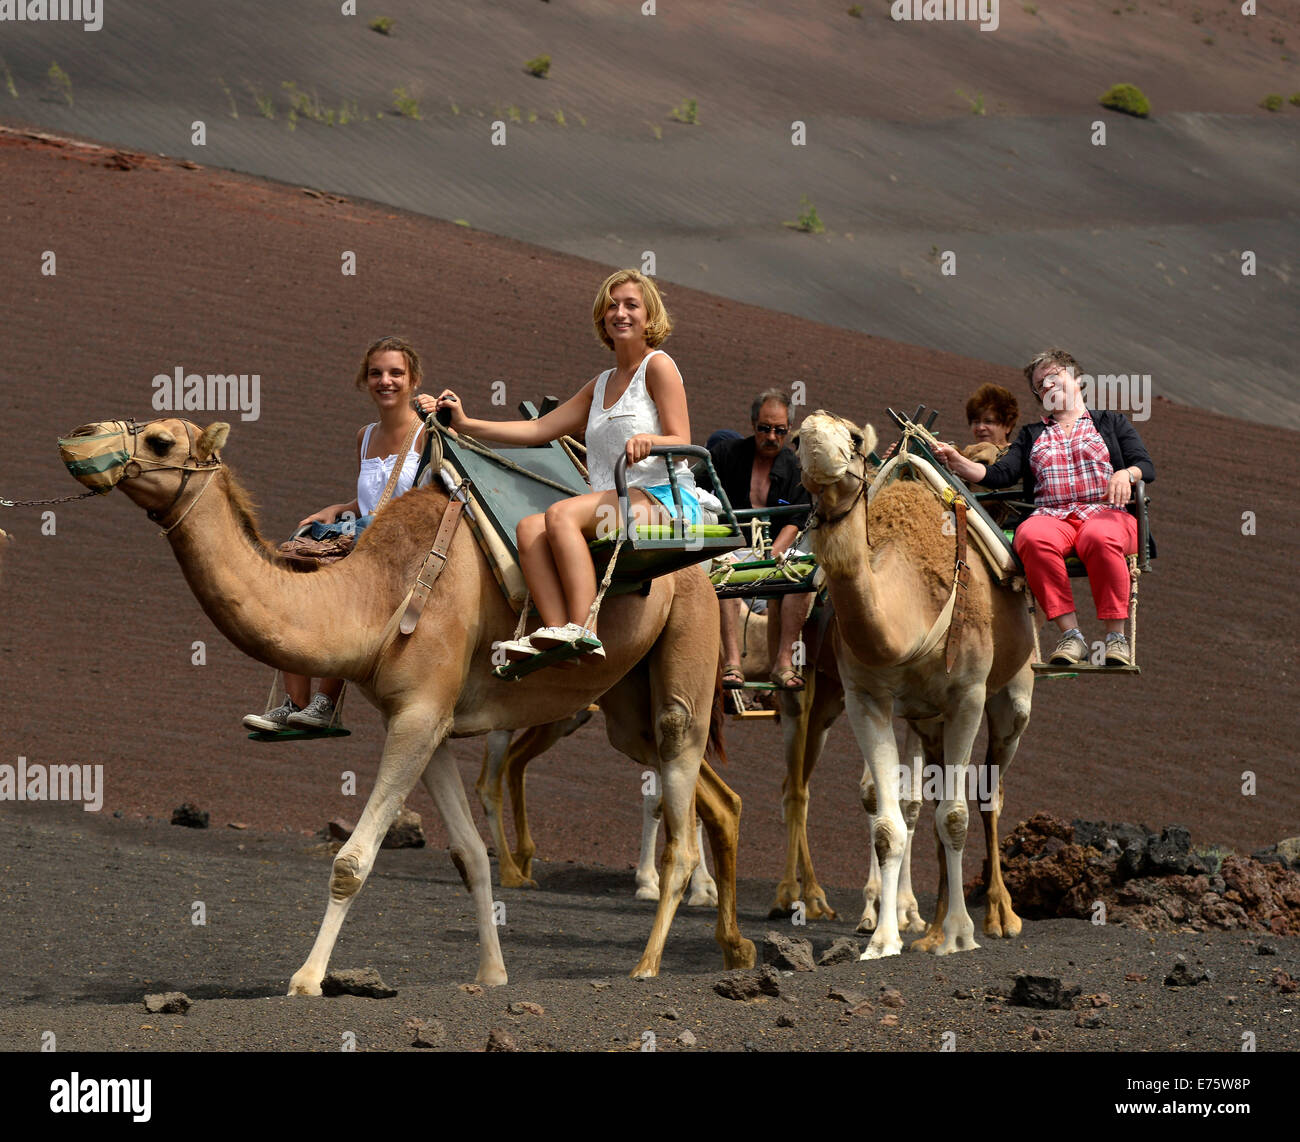 Les touristes à cheval sur des dromadaires, Montanas del Fuego, le Parc National de Timanfaya, Lanzarote, îles Canaries, Espagne Banque D'Images